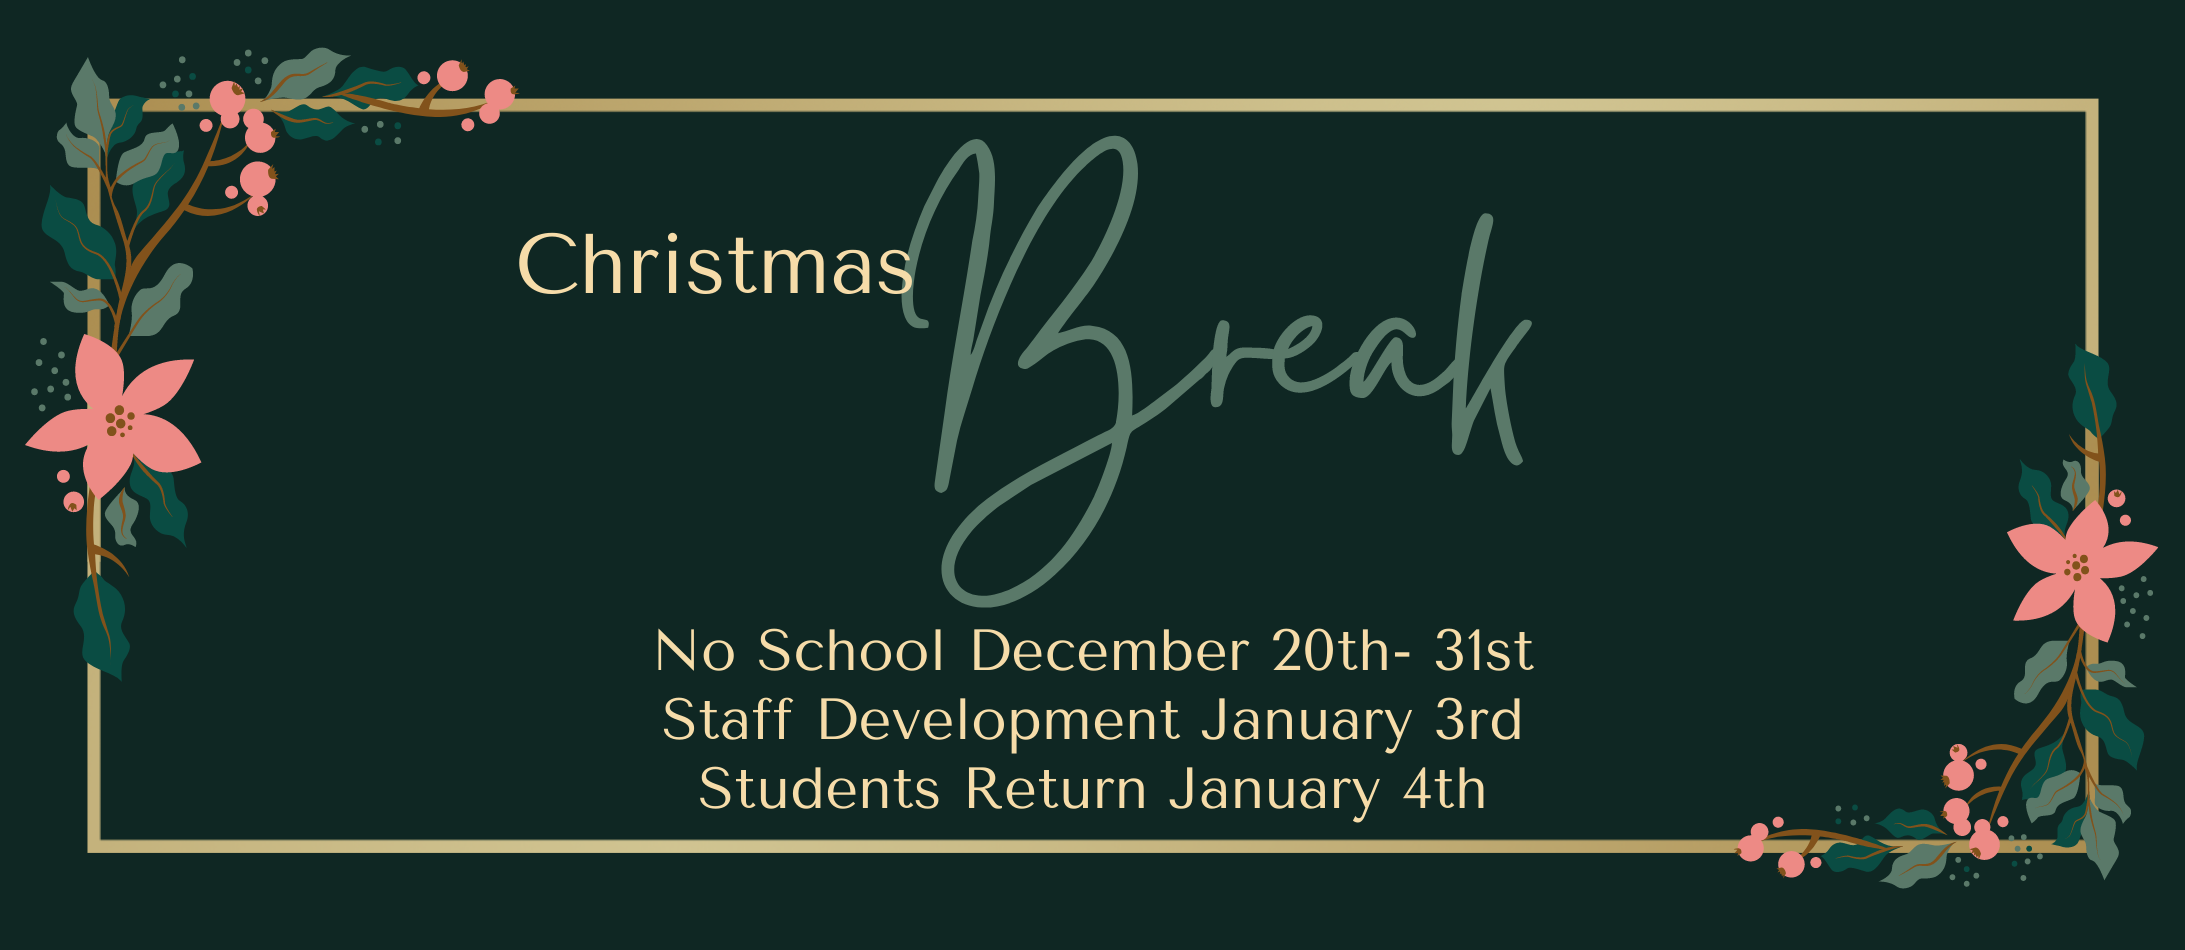 Christmas Break December 20th- 31st